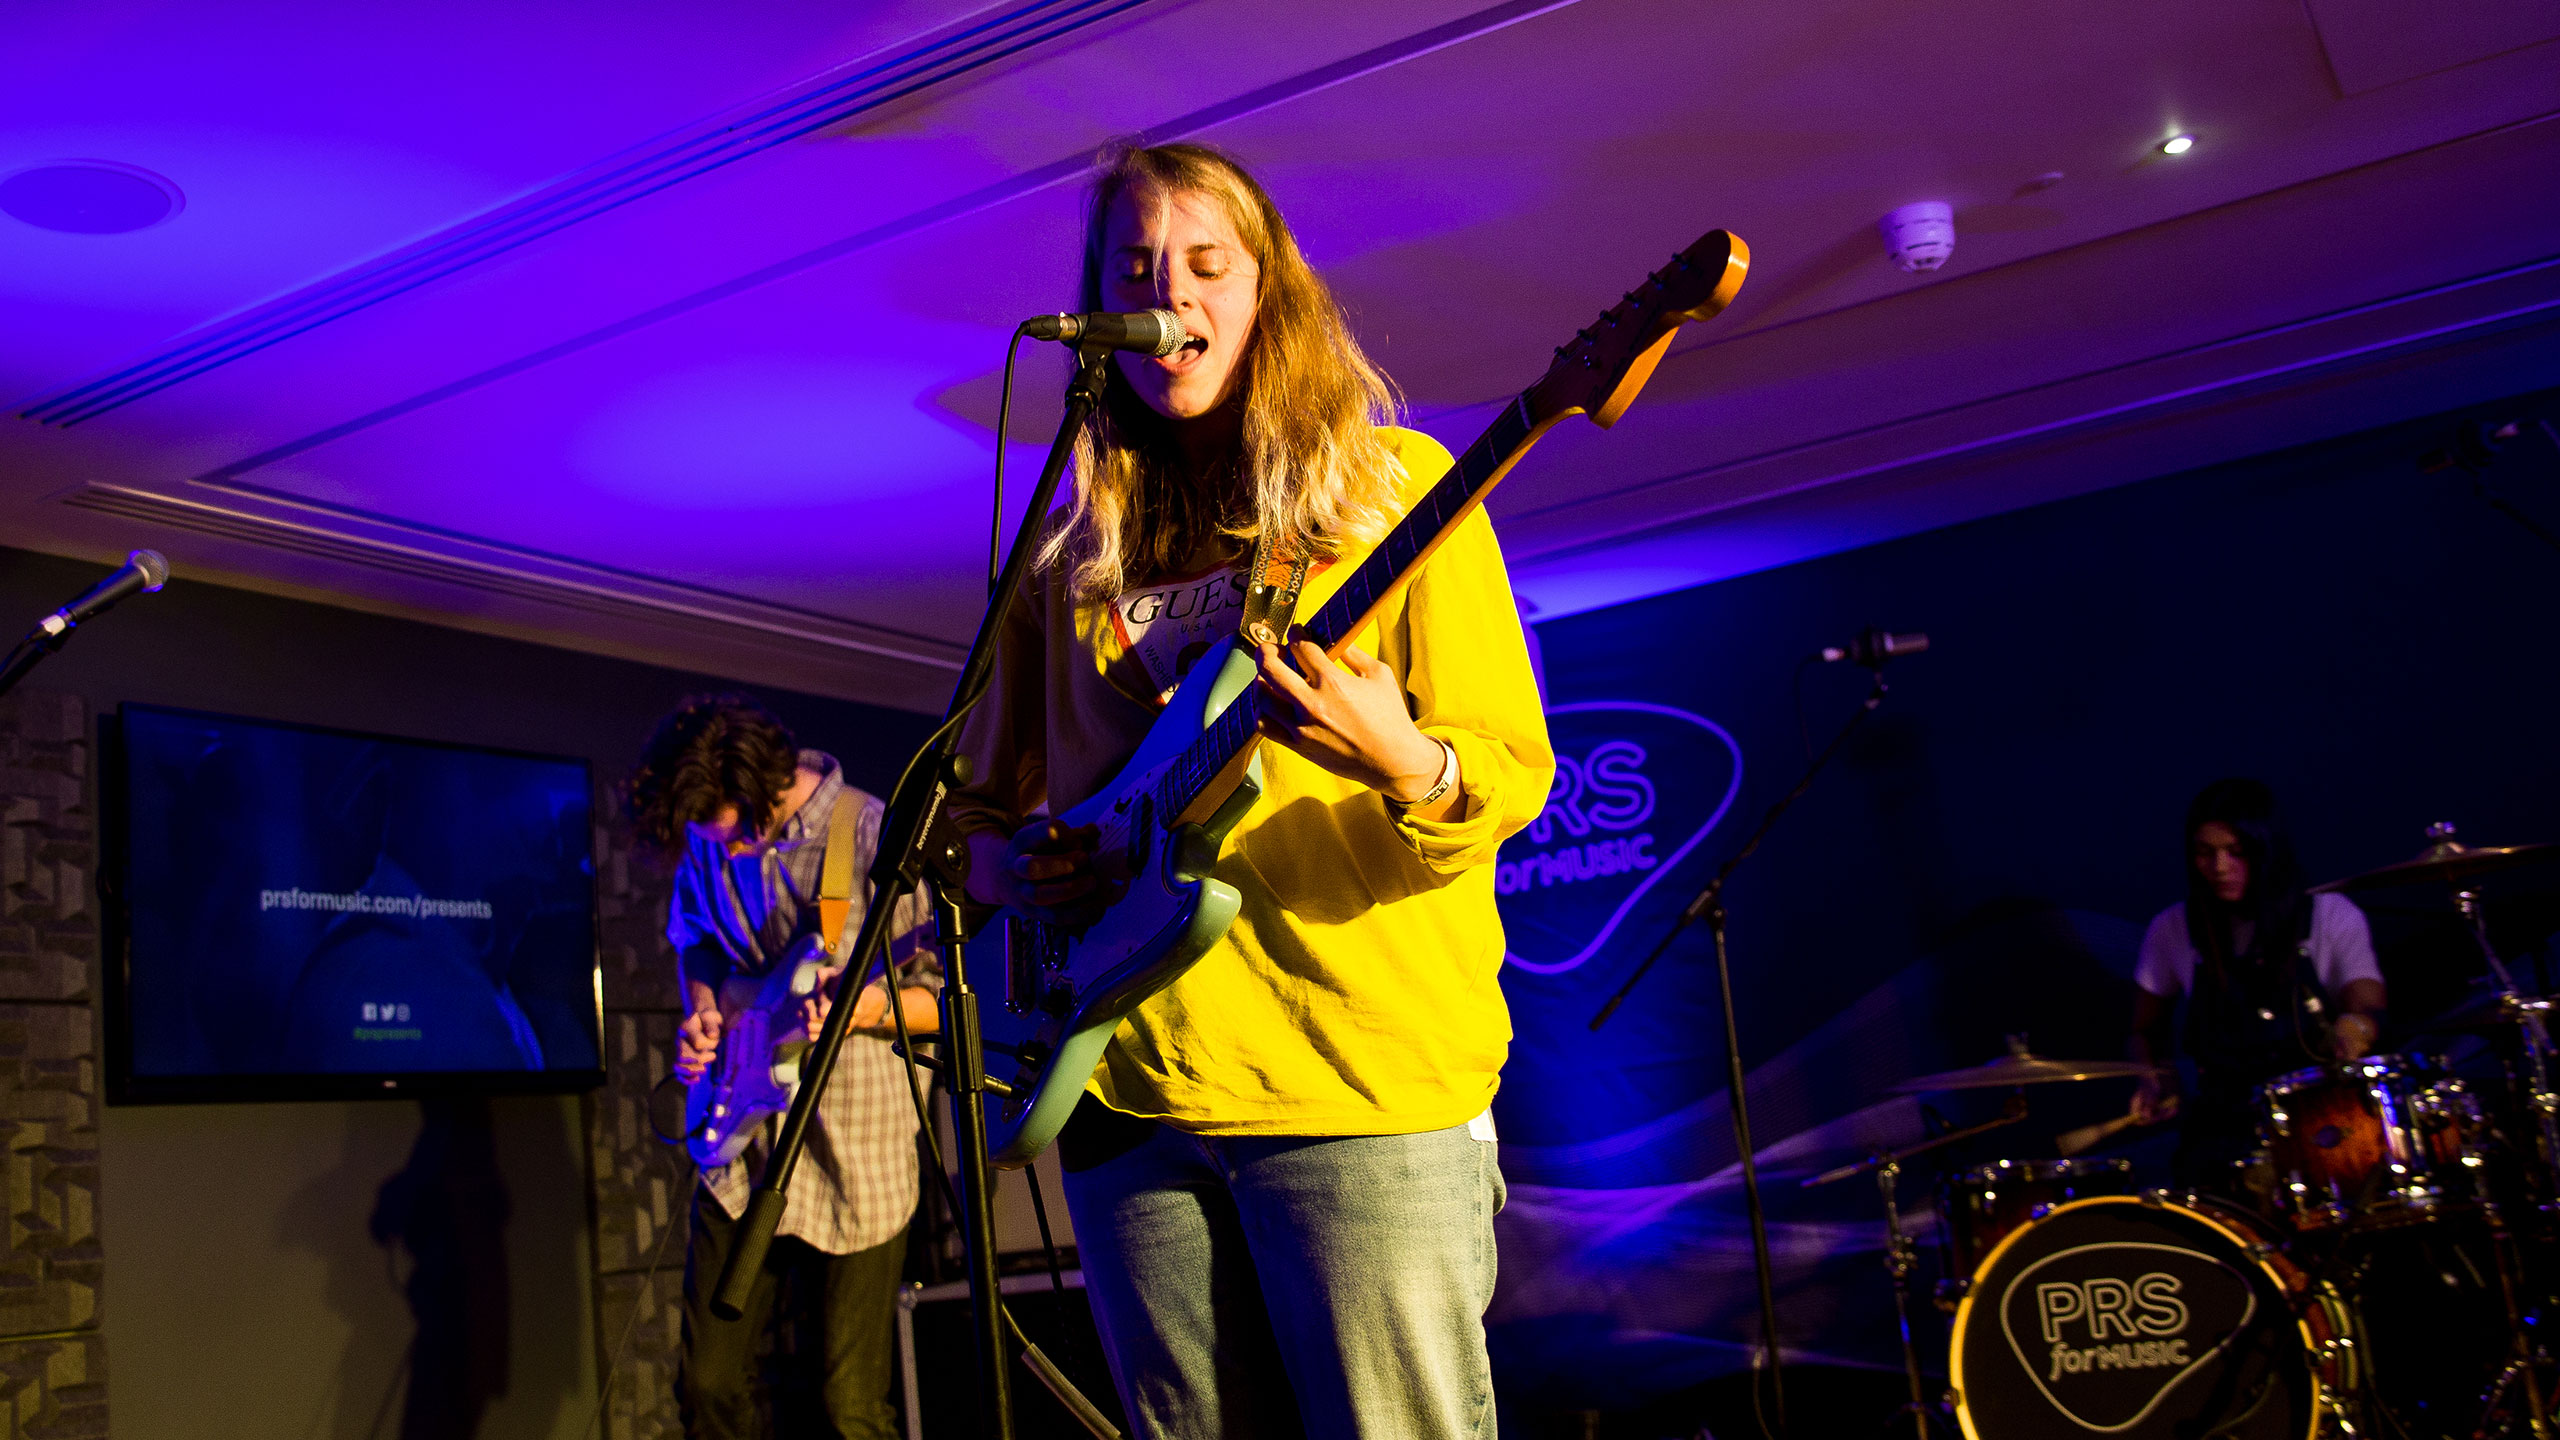 Marika Hackman, wearing a yellow shirt, performing at PRS for Music Presents